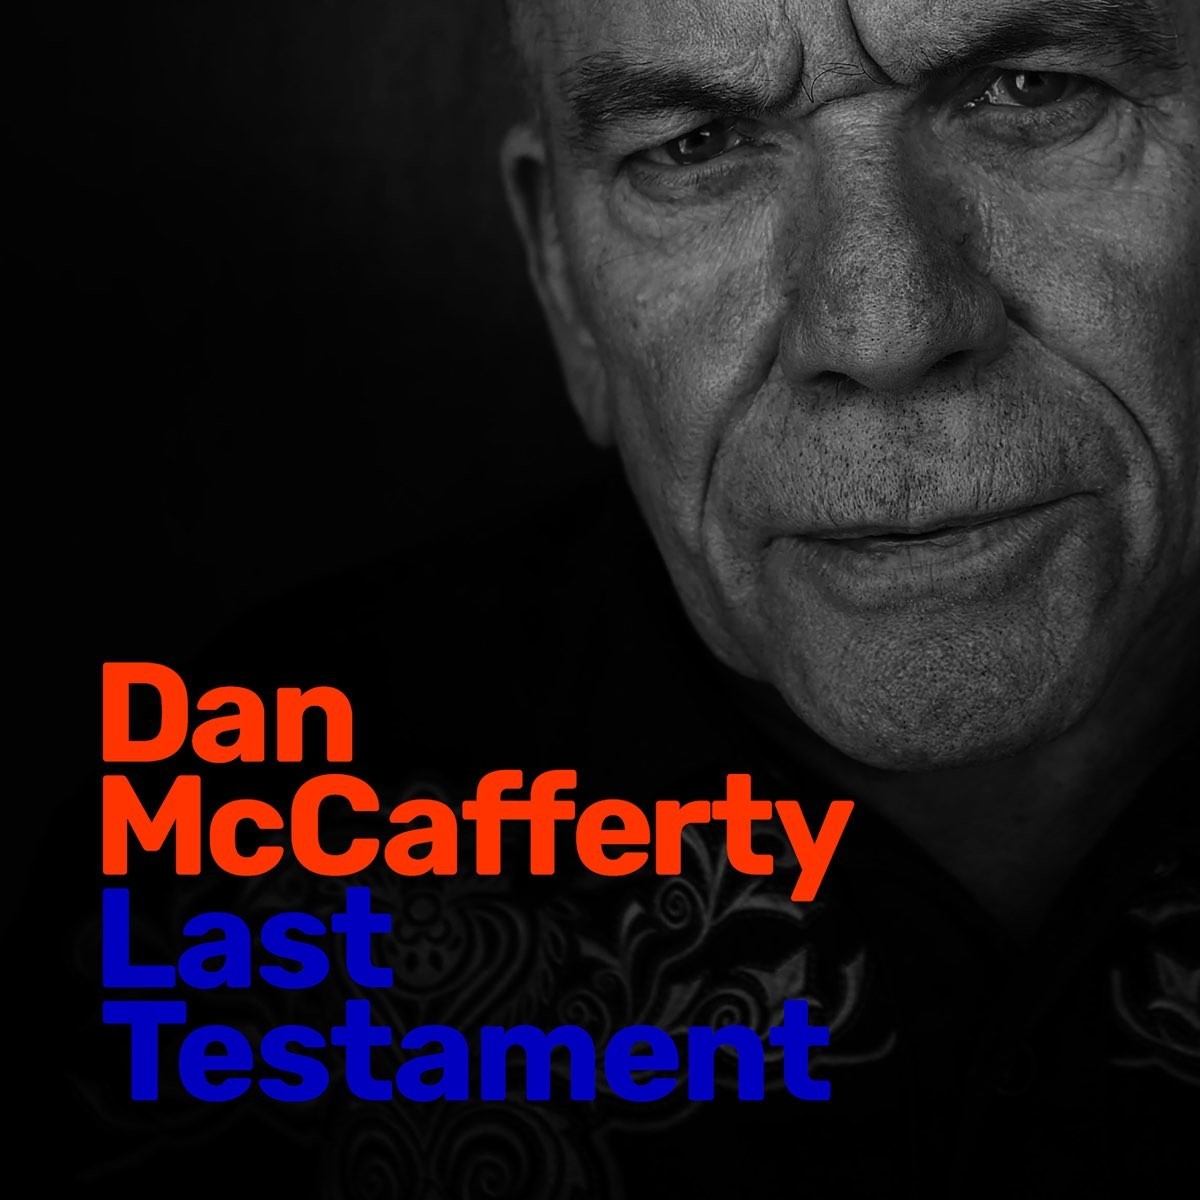 Dan McCafferty – Last Testament (CD) цена и фото